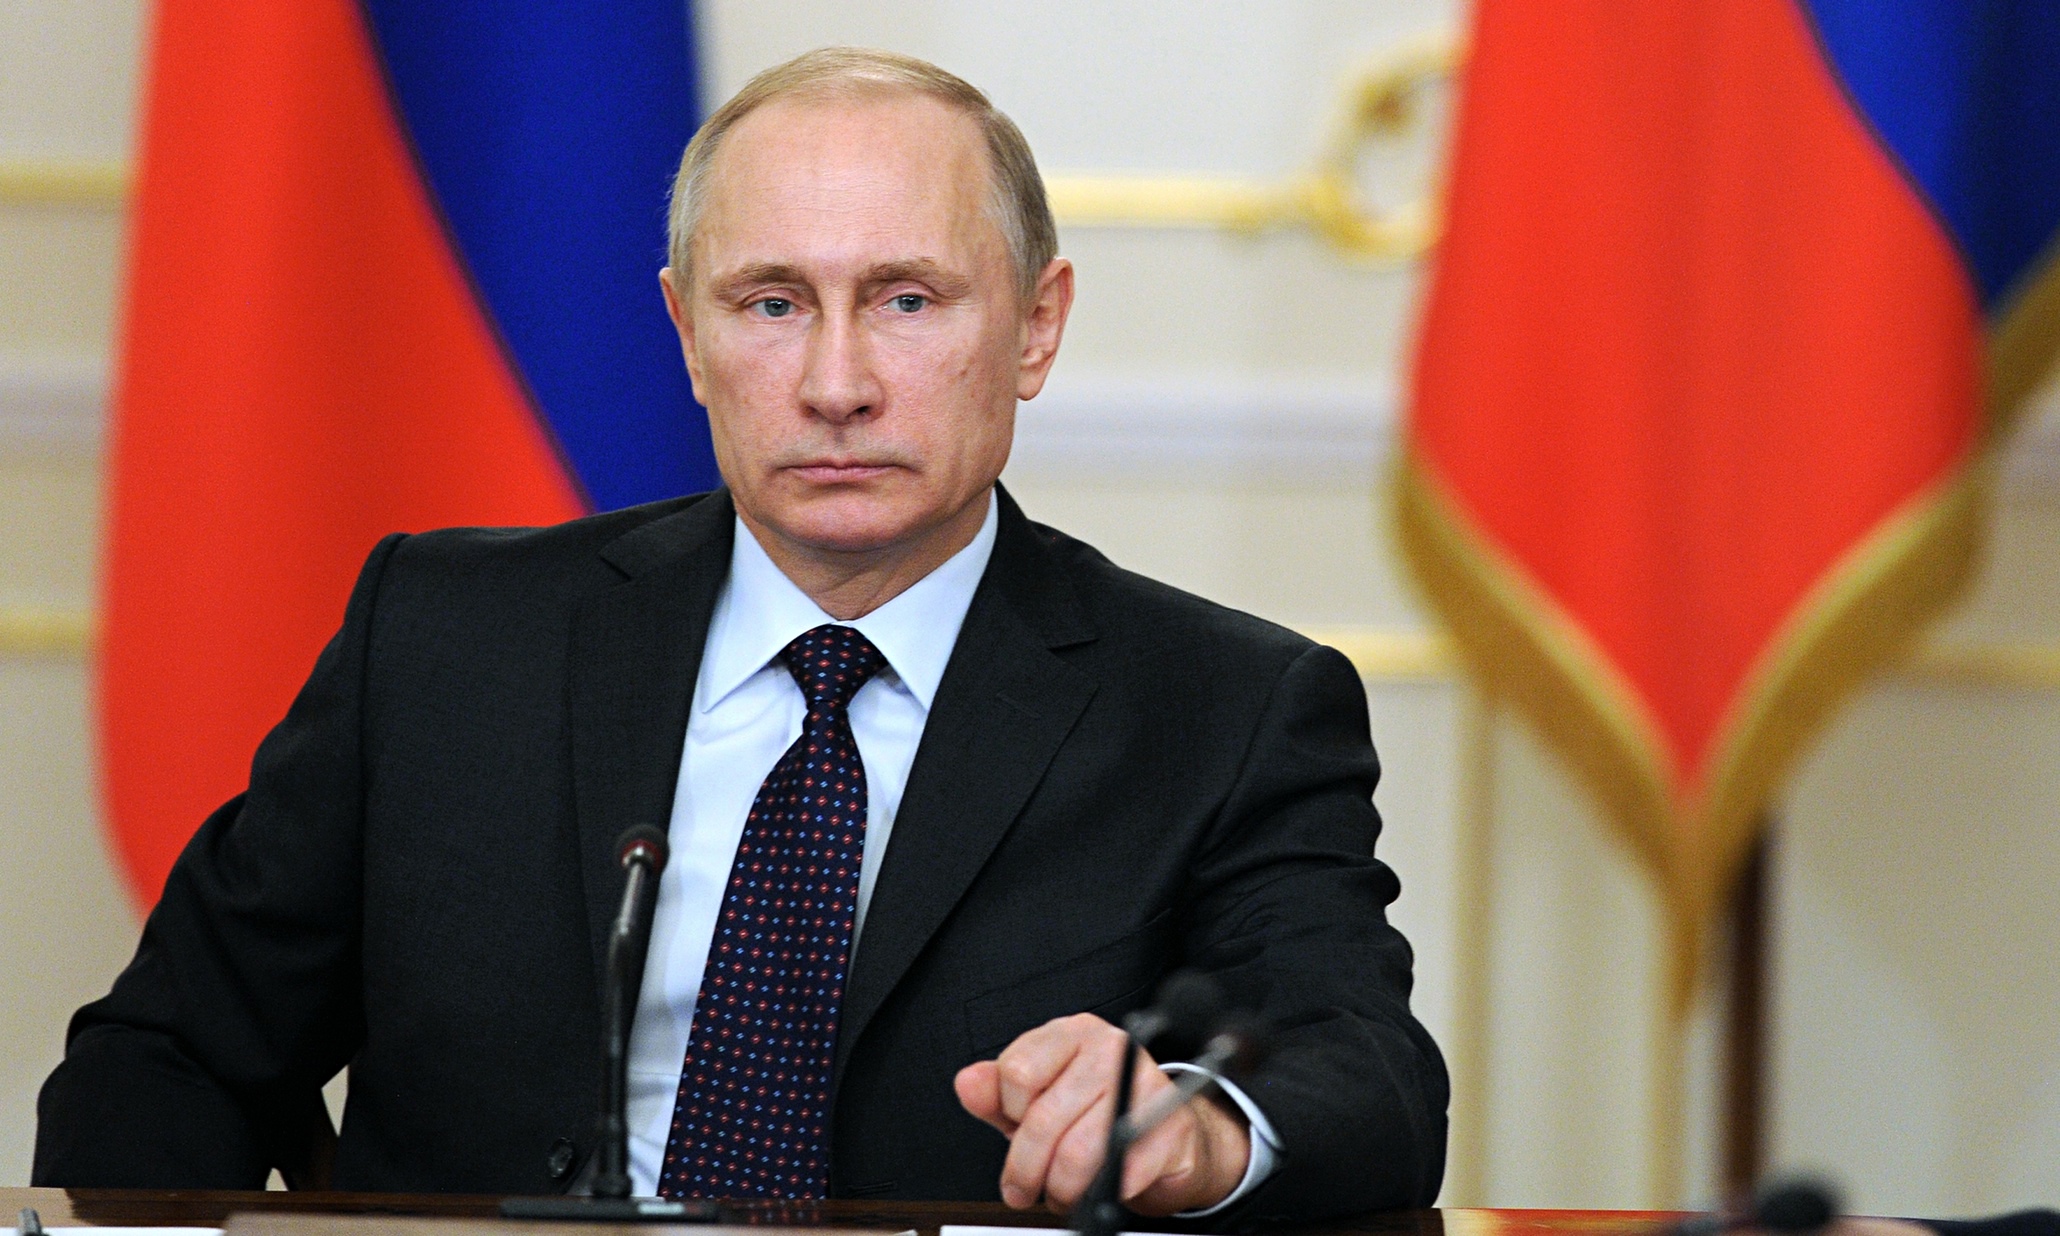 Η συγκλονιστική αλλαγή της οικονομικής ισχύος της Ρωσίας στην 25ετία Πούτιν